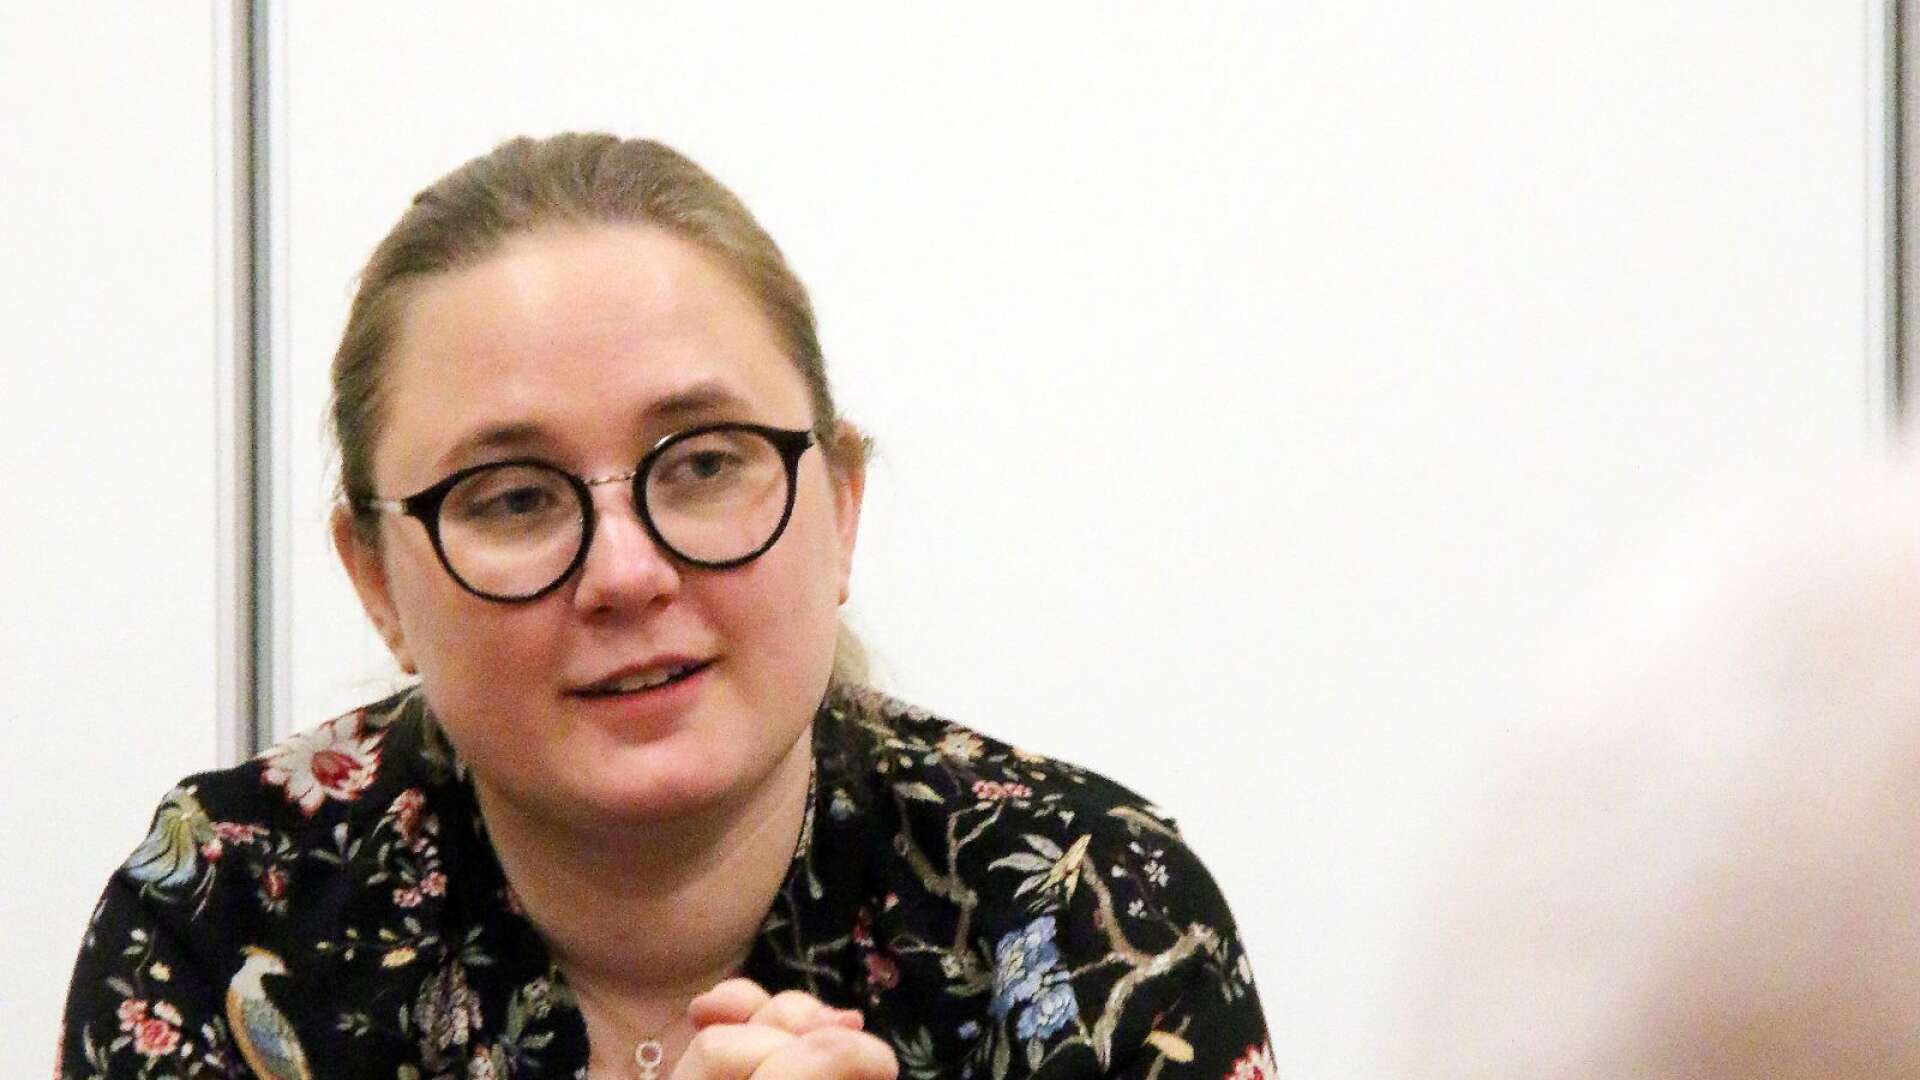 Vänsterns miljöarbete på väg in i 2019, var Elin Segerlinds tema när hon höll en föreläsning i Gamla Real i Ed på måndagen.